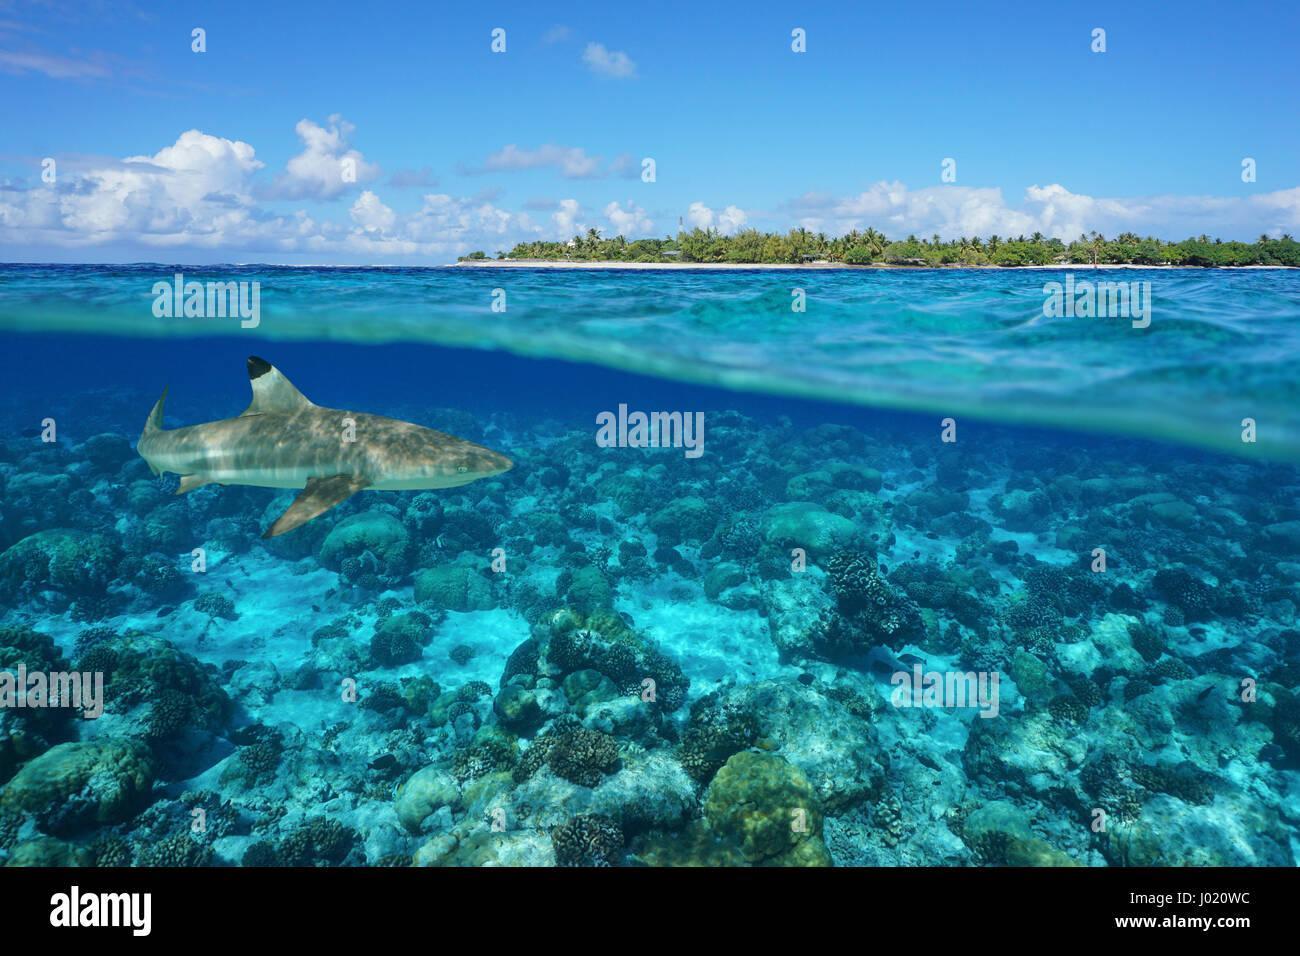 Al di sopra e al di sotto della superficie del mare con un'isola e uno squalo subacquea, Tiputa pass, Rangiroa Atoll, Tuamotu, Polinesia francese, oceano pacifico Foto Stock